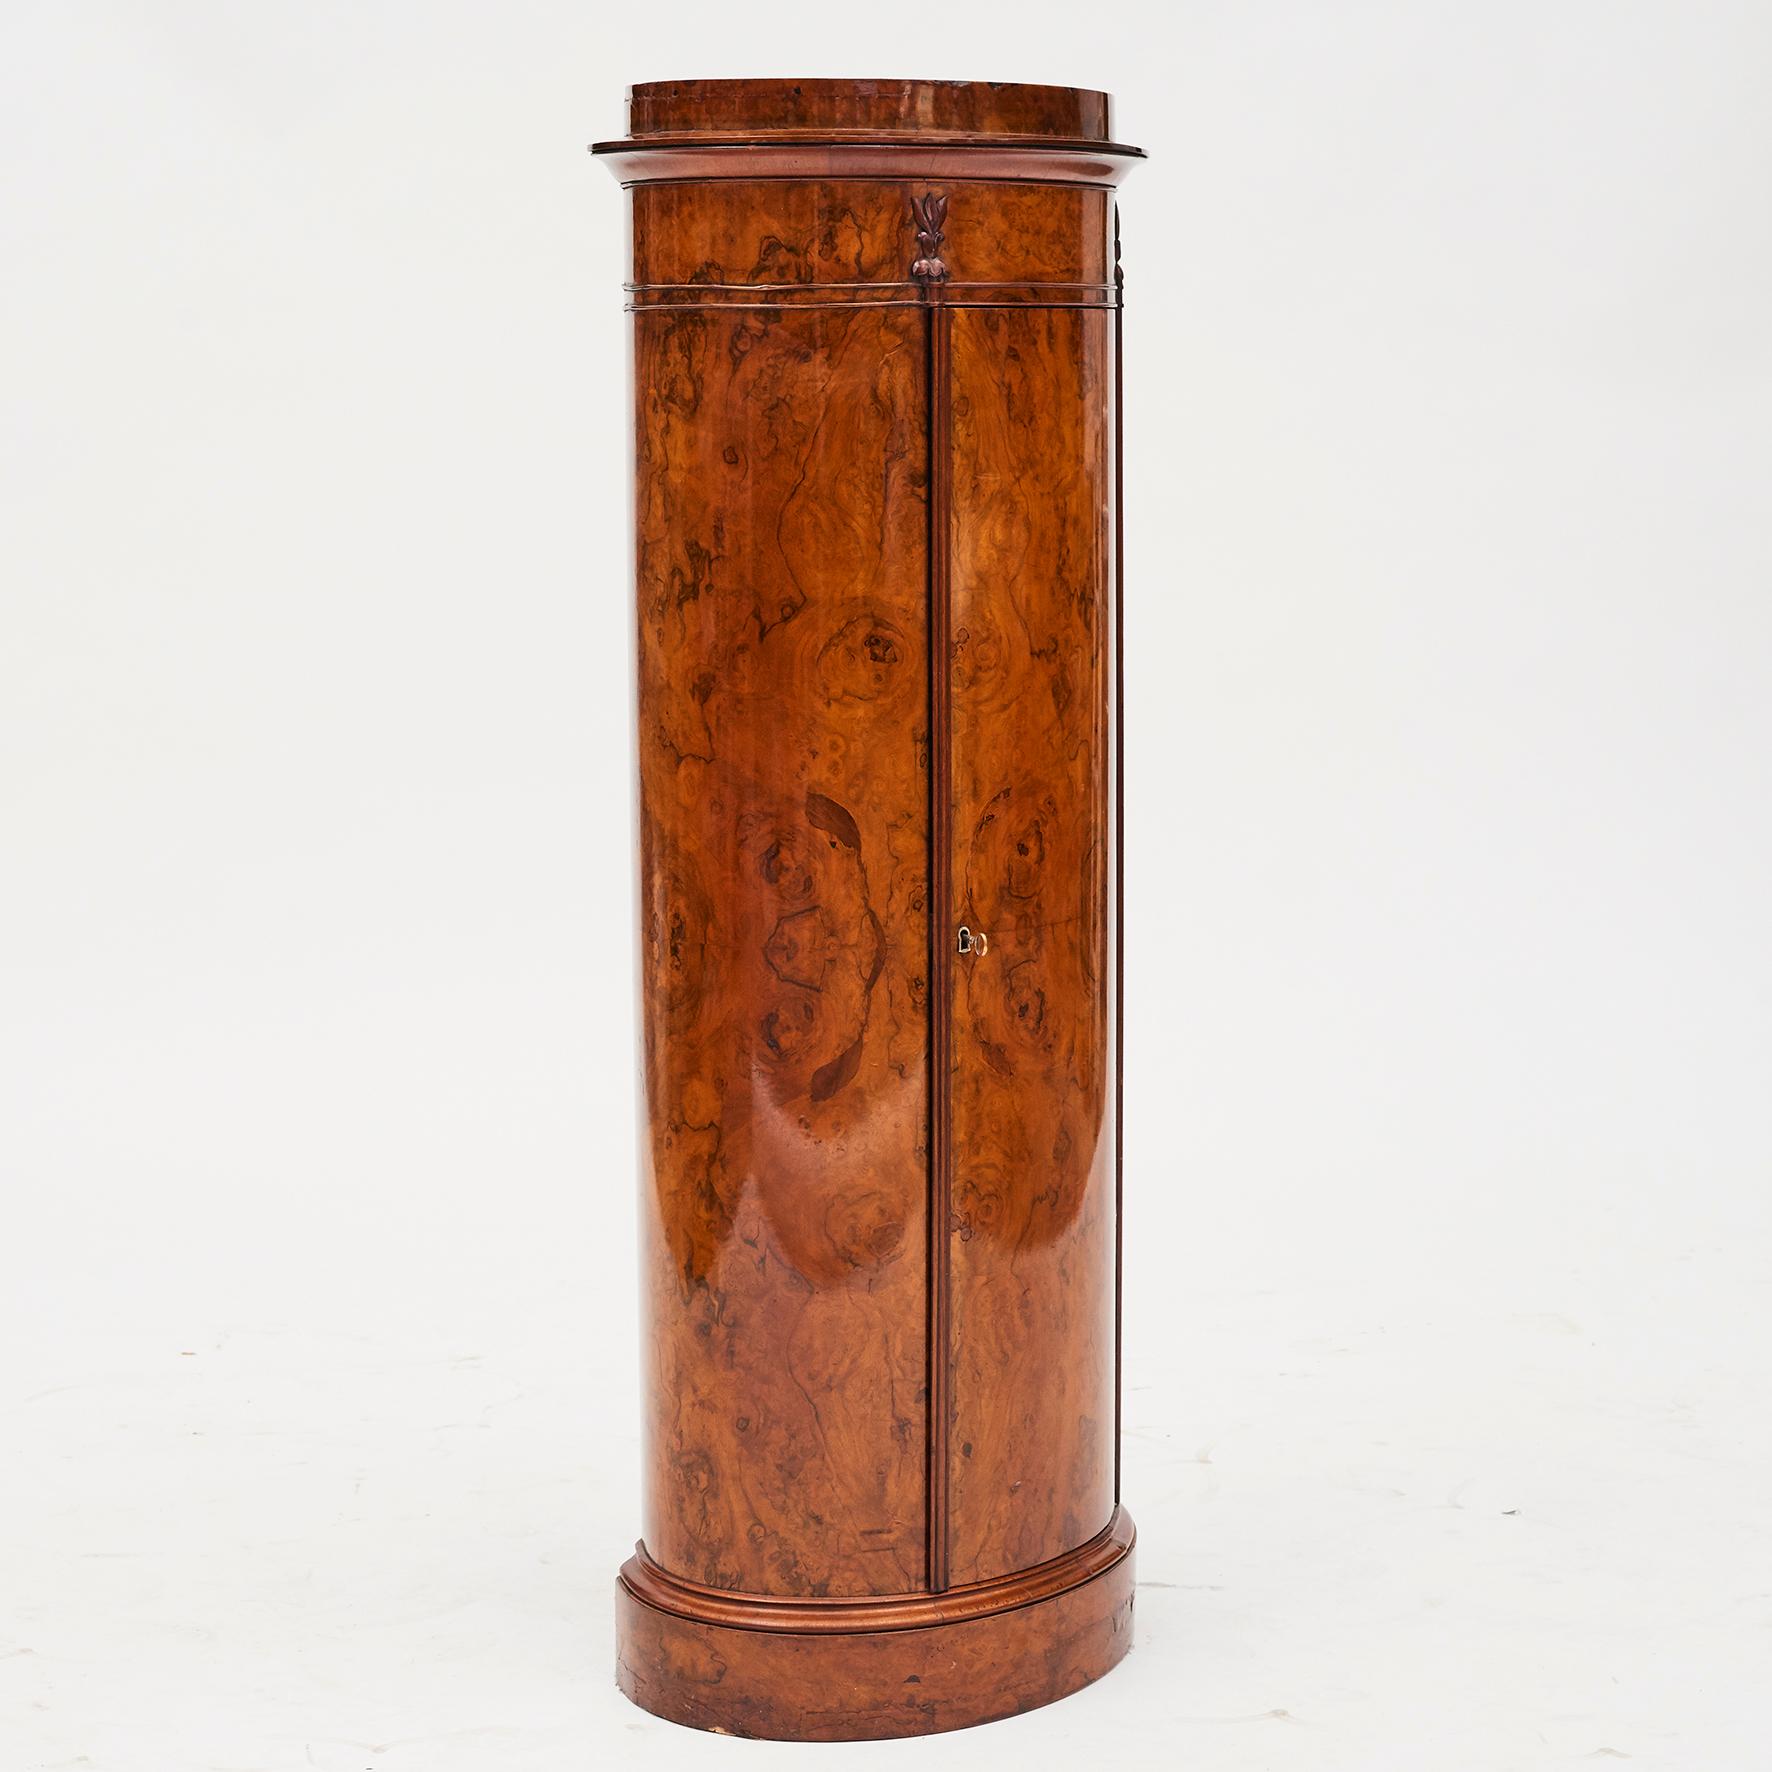 Danish Cylinder Burl Walnut Pedestal Cabinet, Copenhagen, 1830-1840